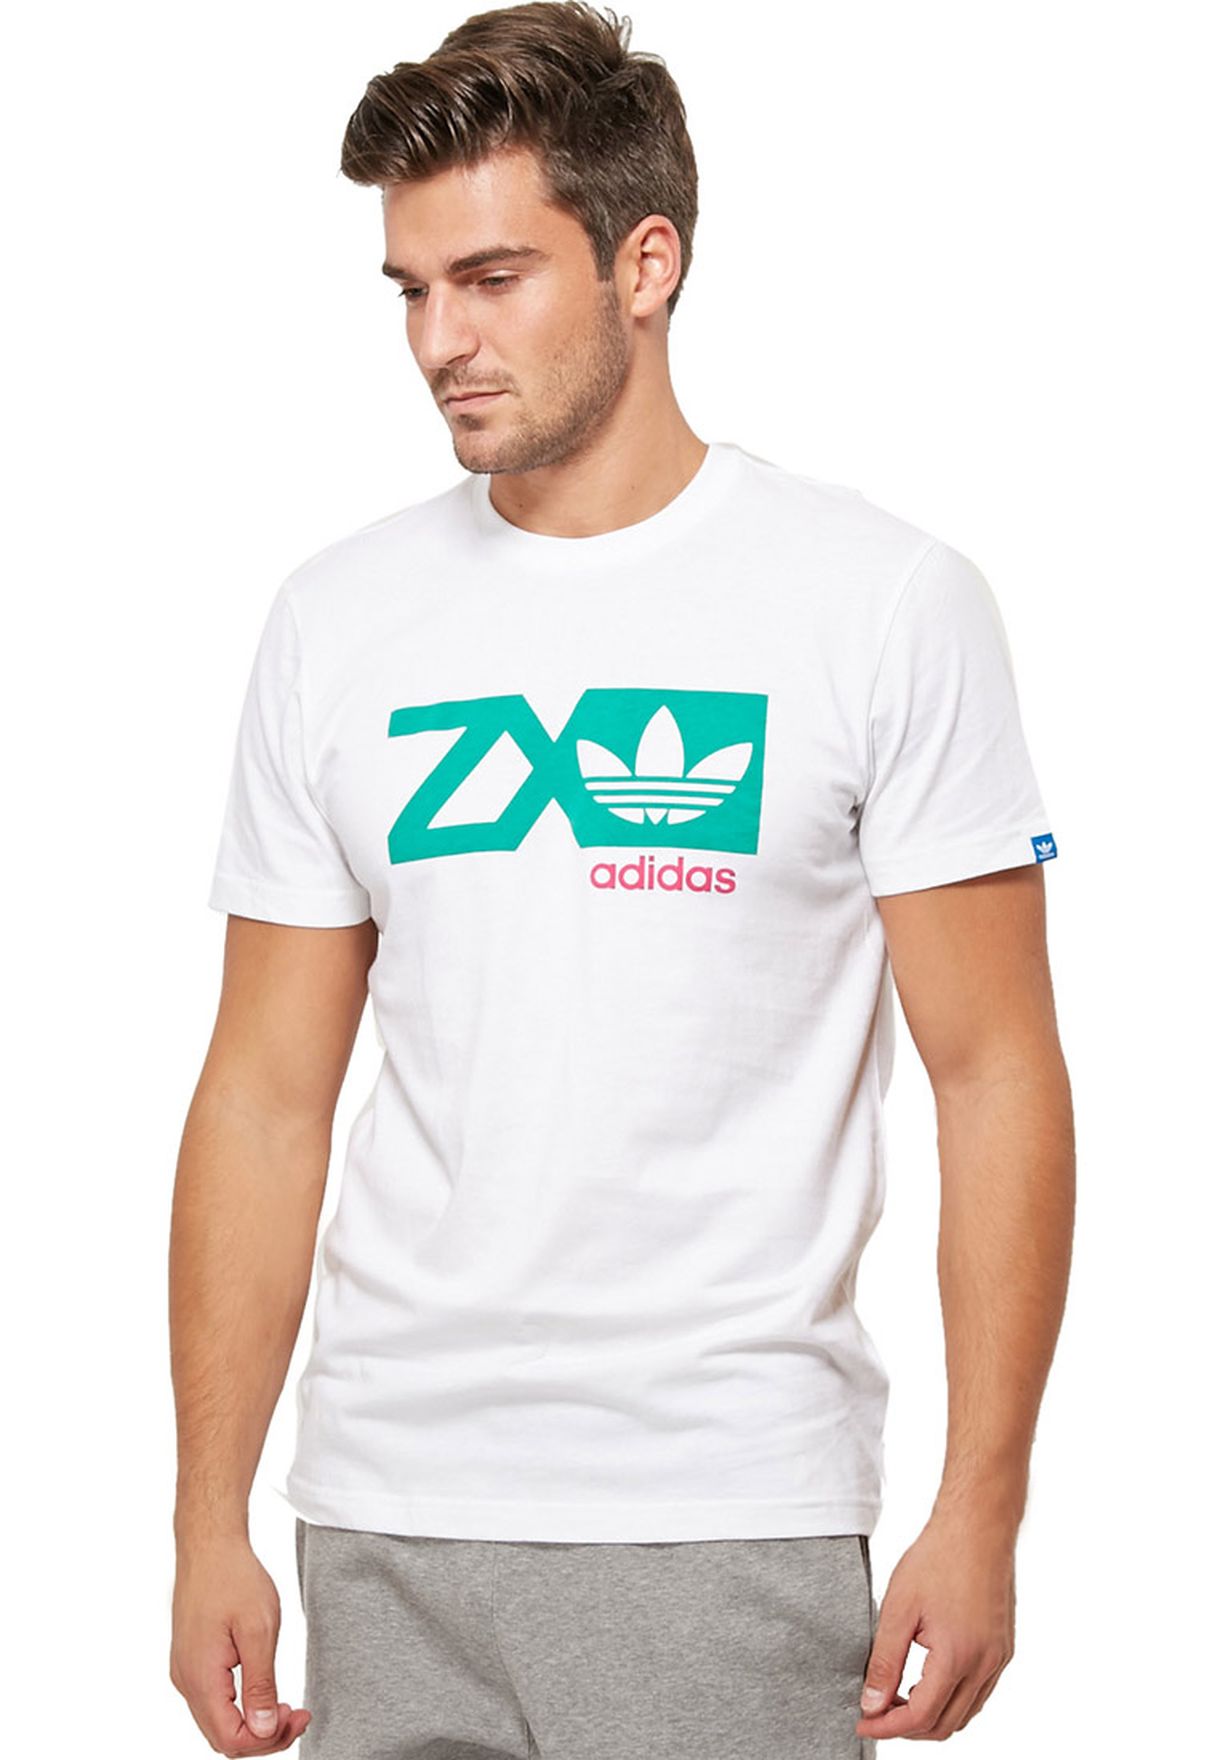 adidas t shirt zx